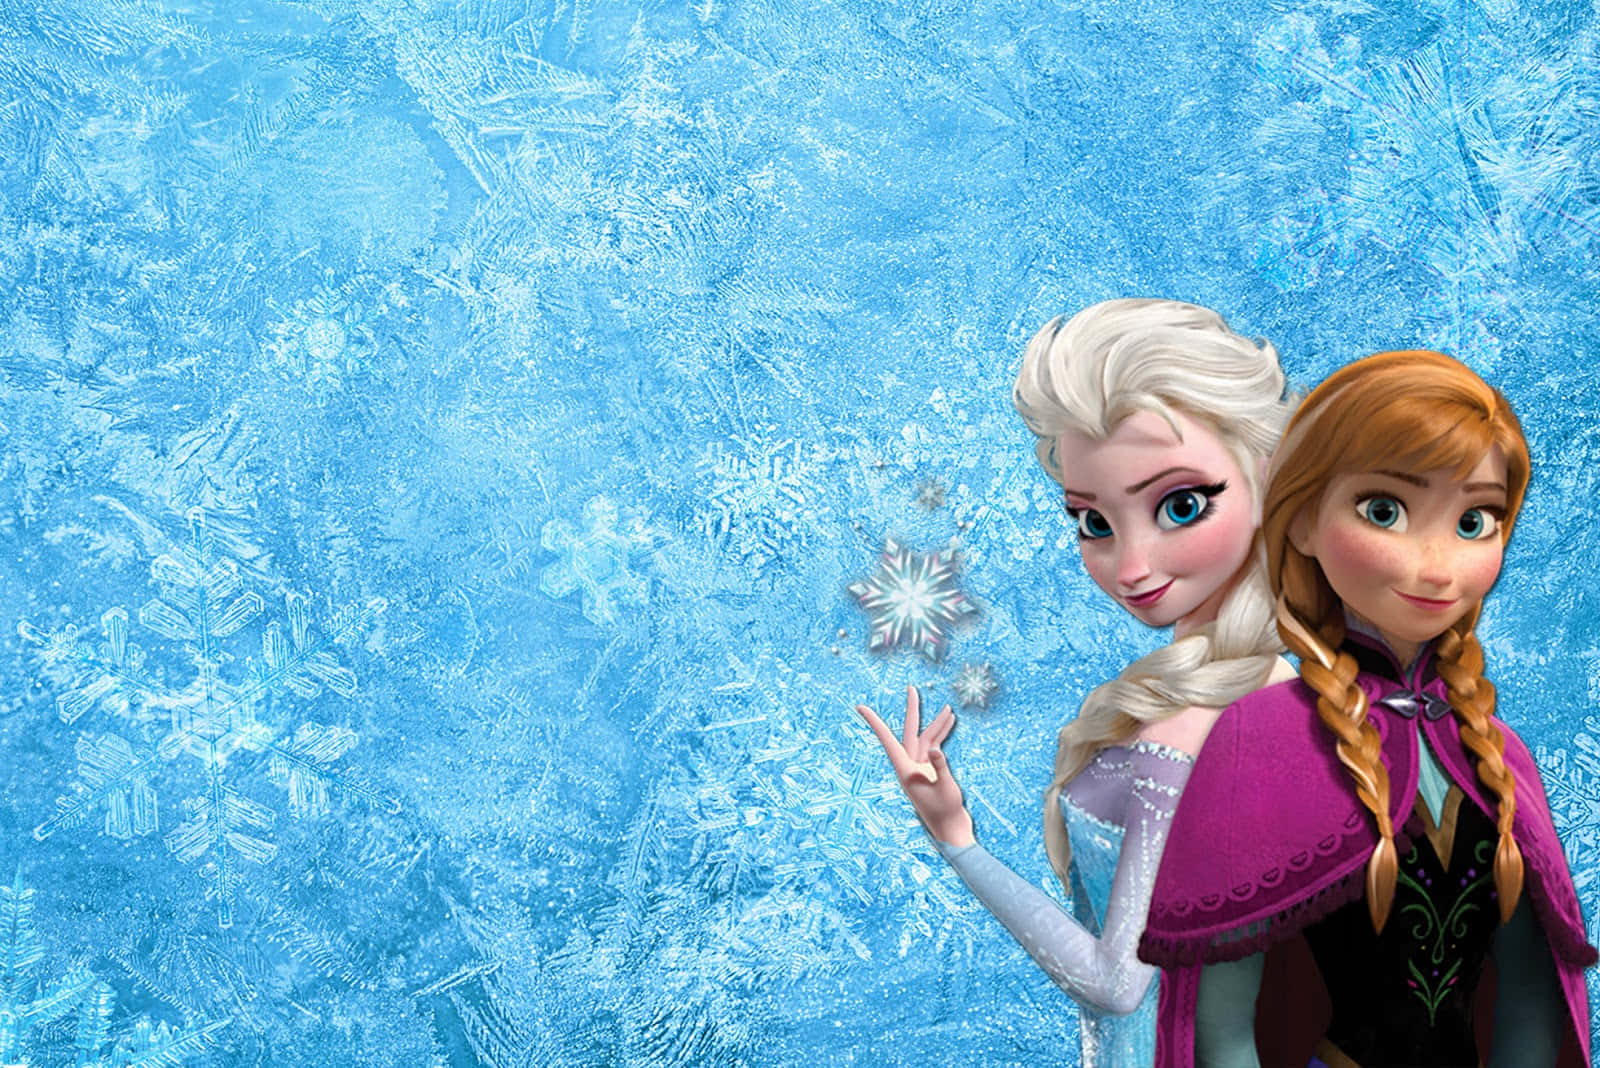 Umaimagem Do Castelo De Arendelle, A Heroína Do Filme Frozen Da Disney.